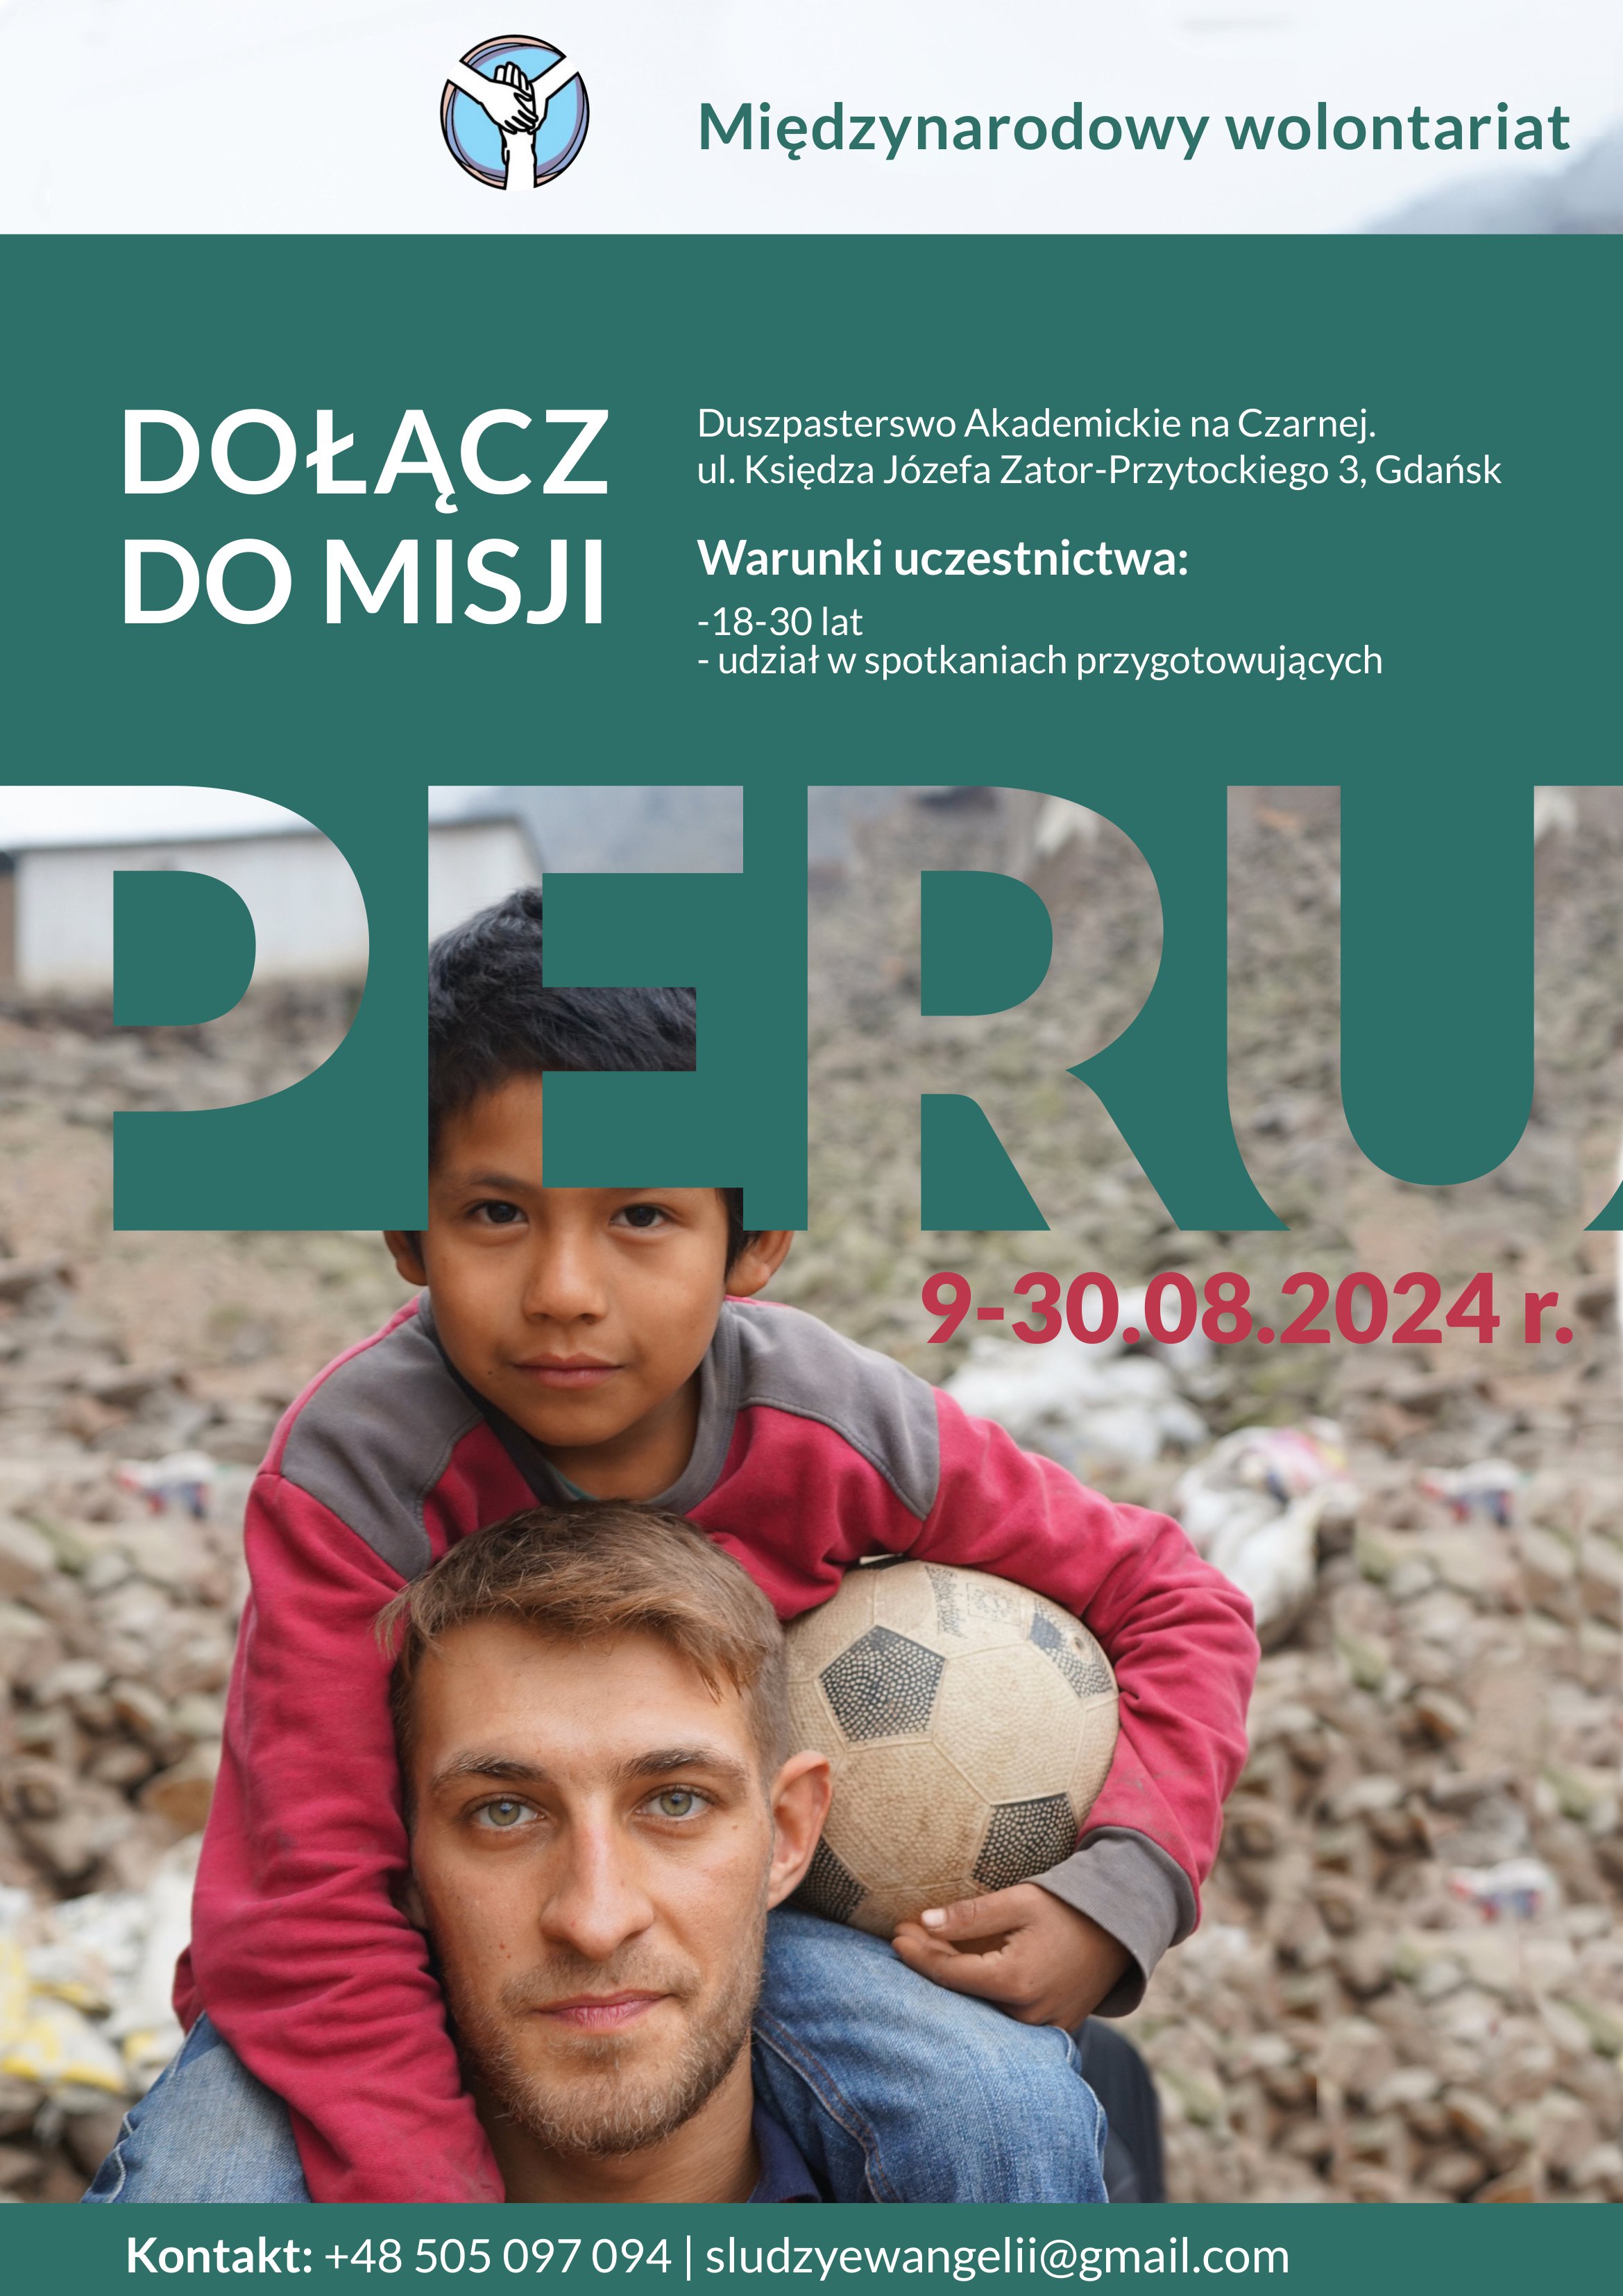 Misje w Peru: 9-30.08.2024 r.